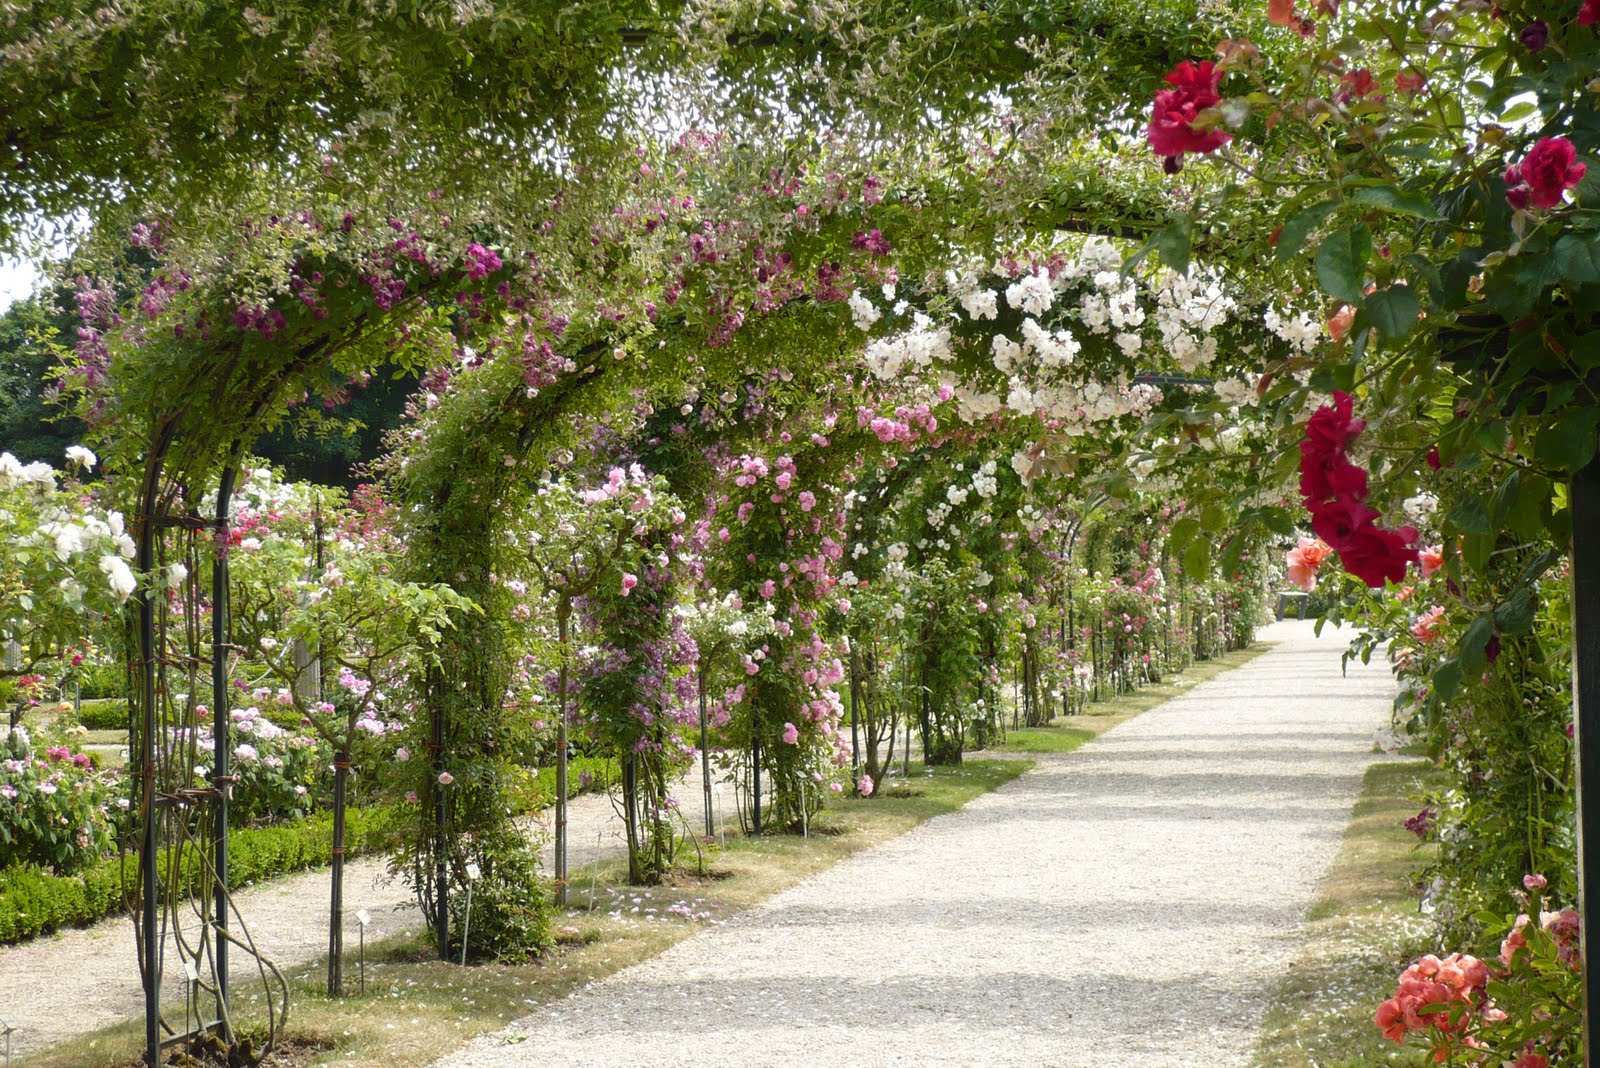 Le Jardin de Pacalou: Un jardin de roses. - P1010097